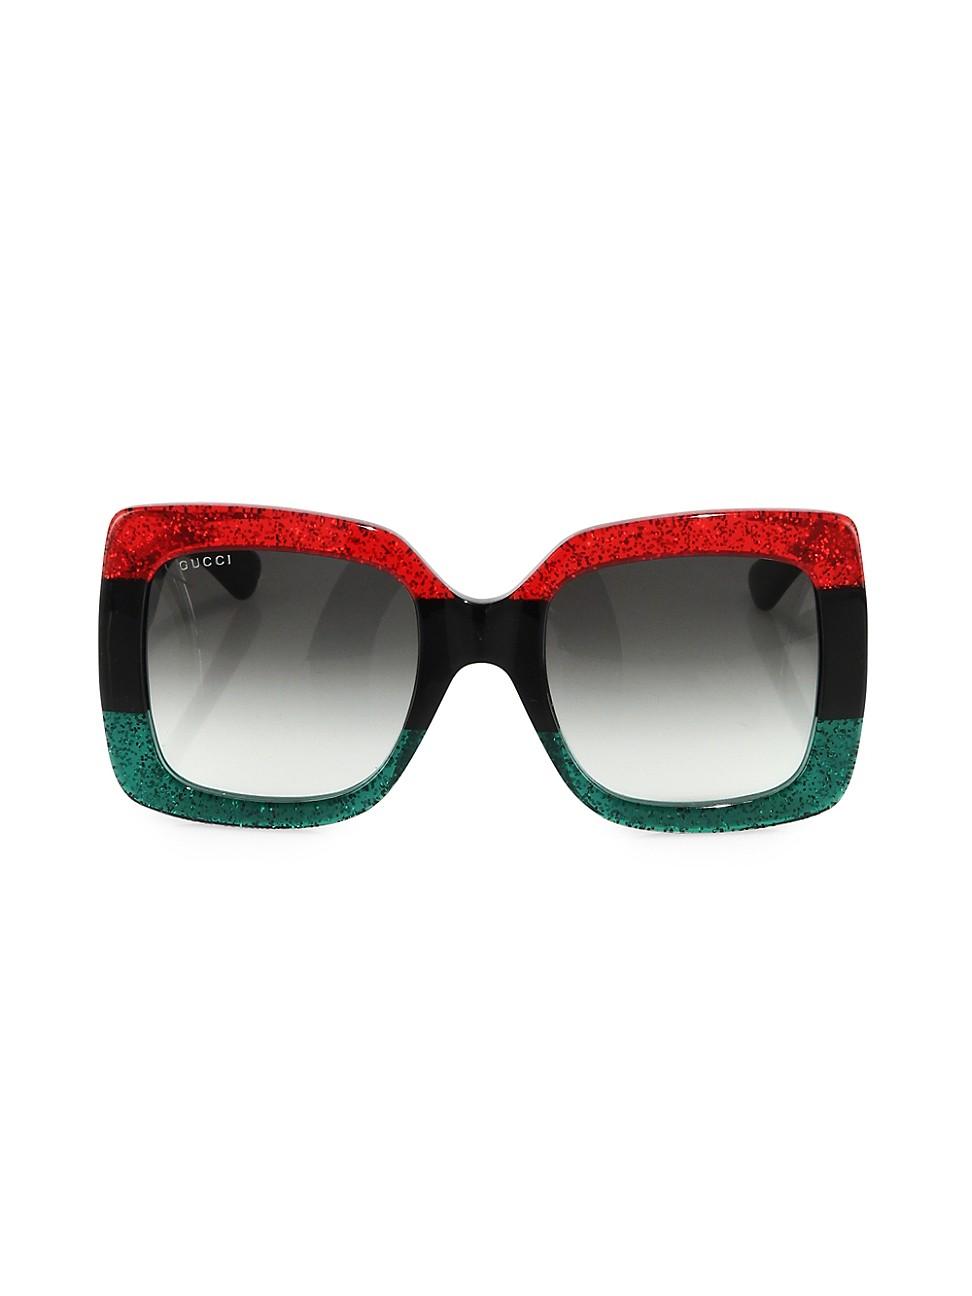 gucci green red sunglasses